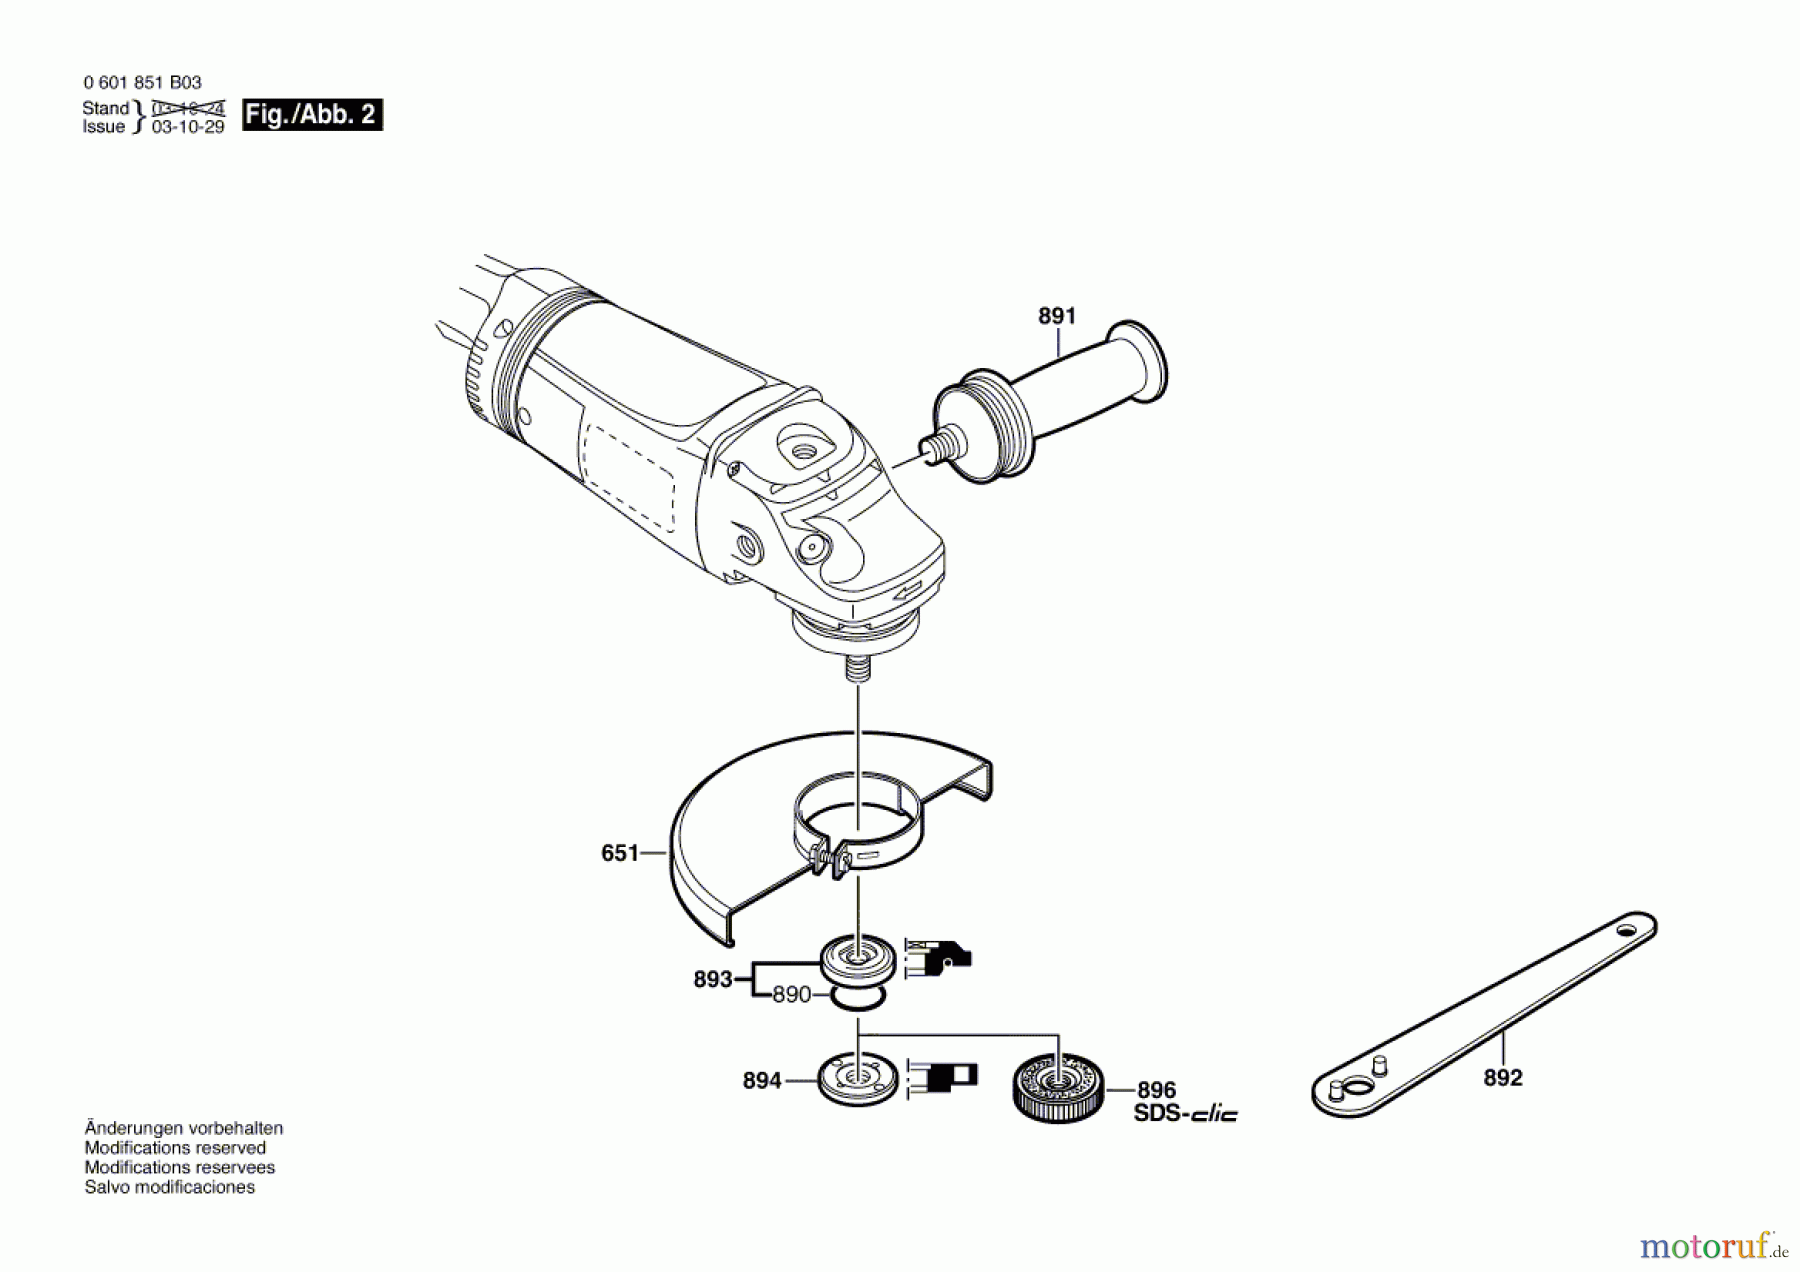  Bosch Werkzeug Winkelschleifer GWS 21-180 HV Seite 2